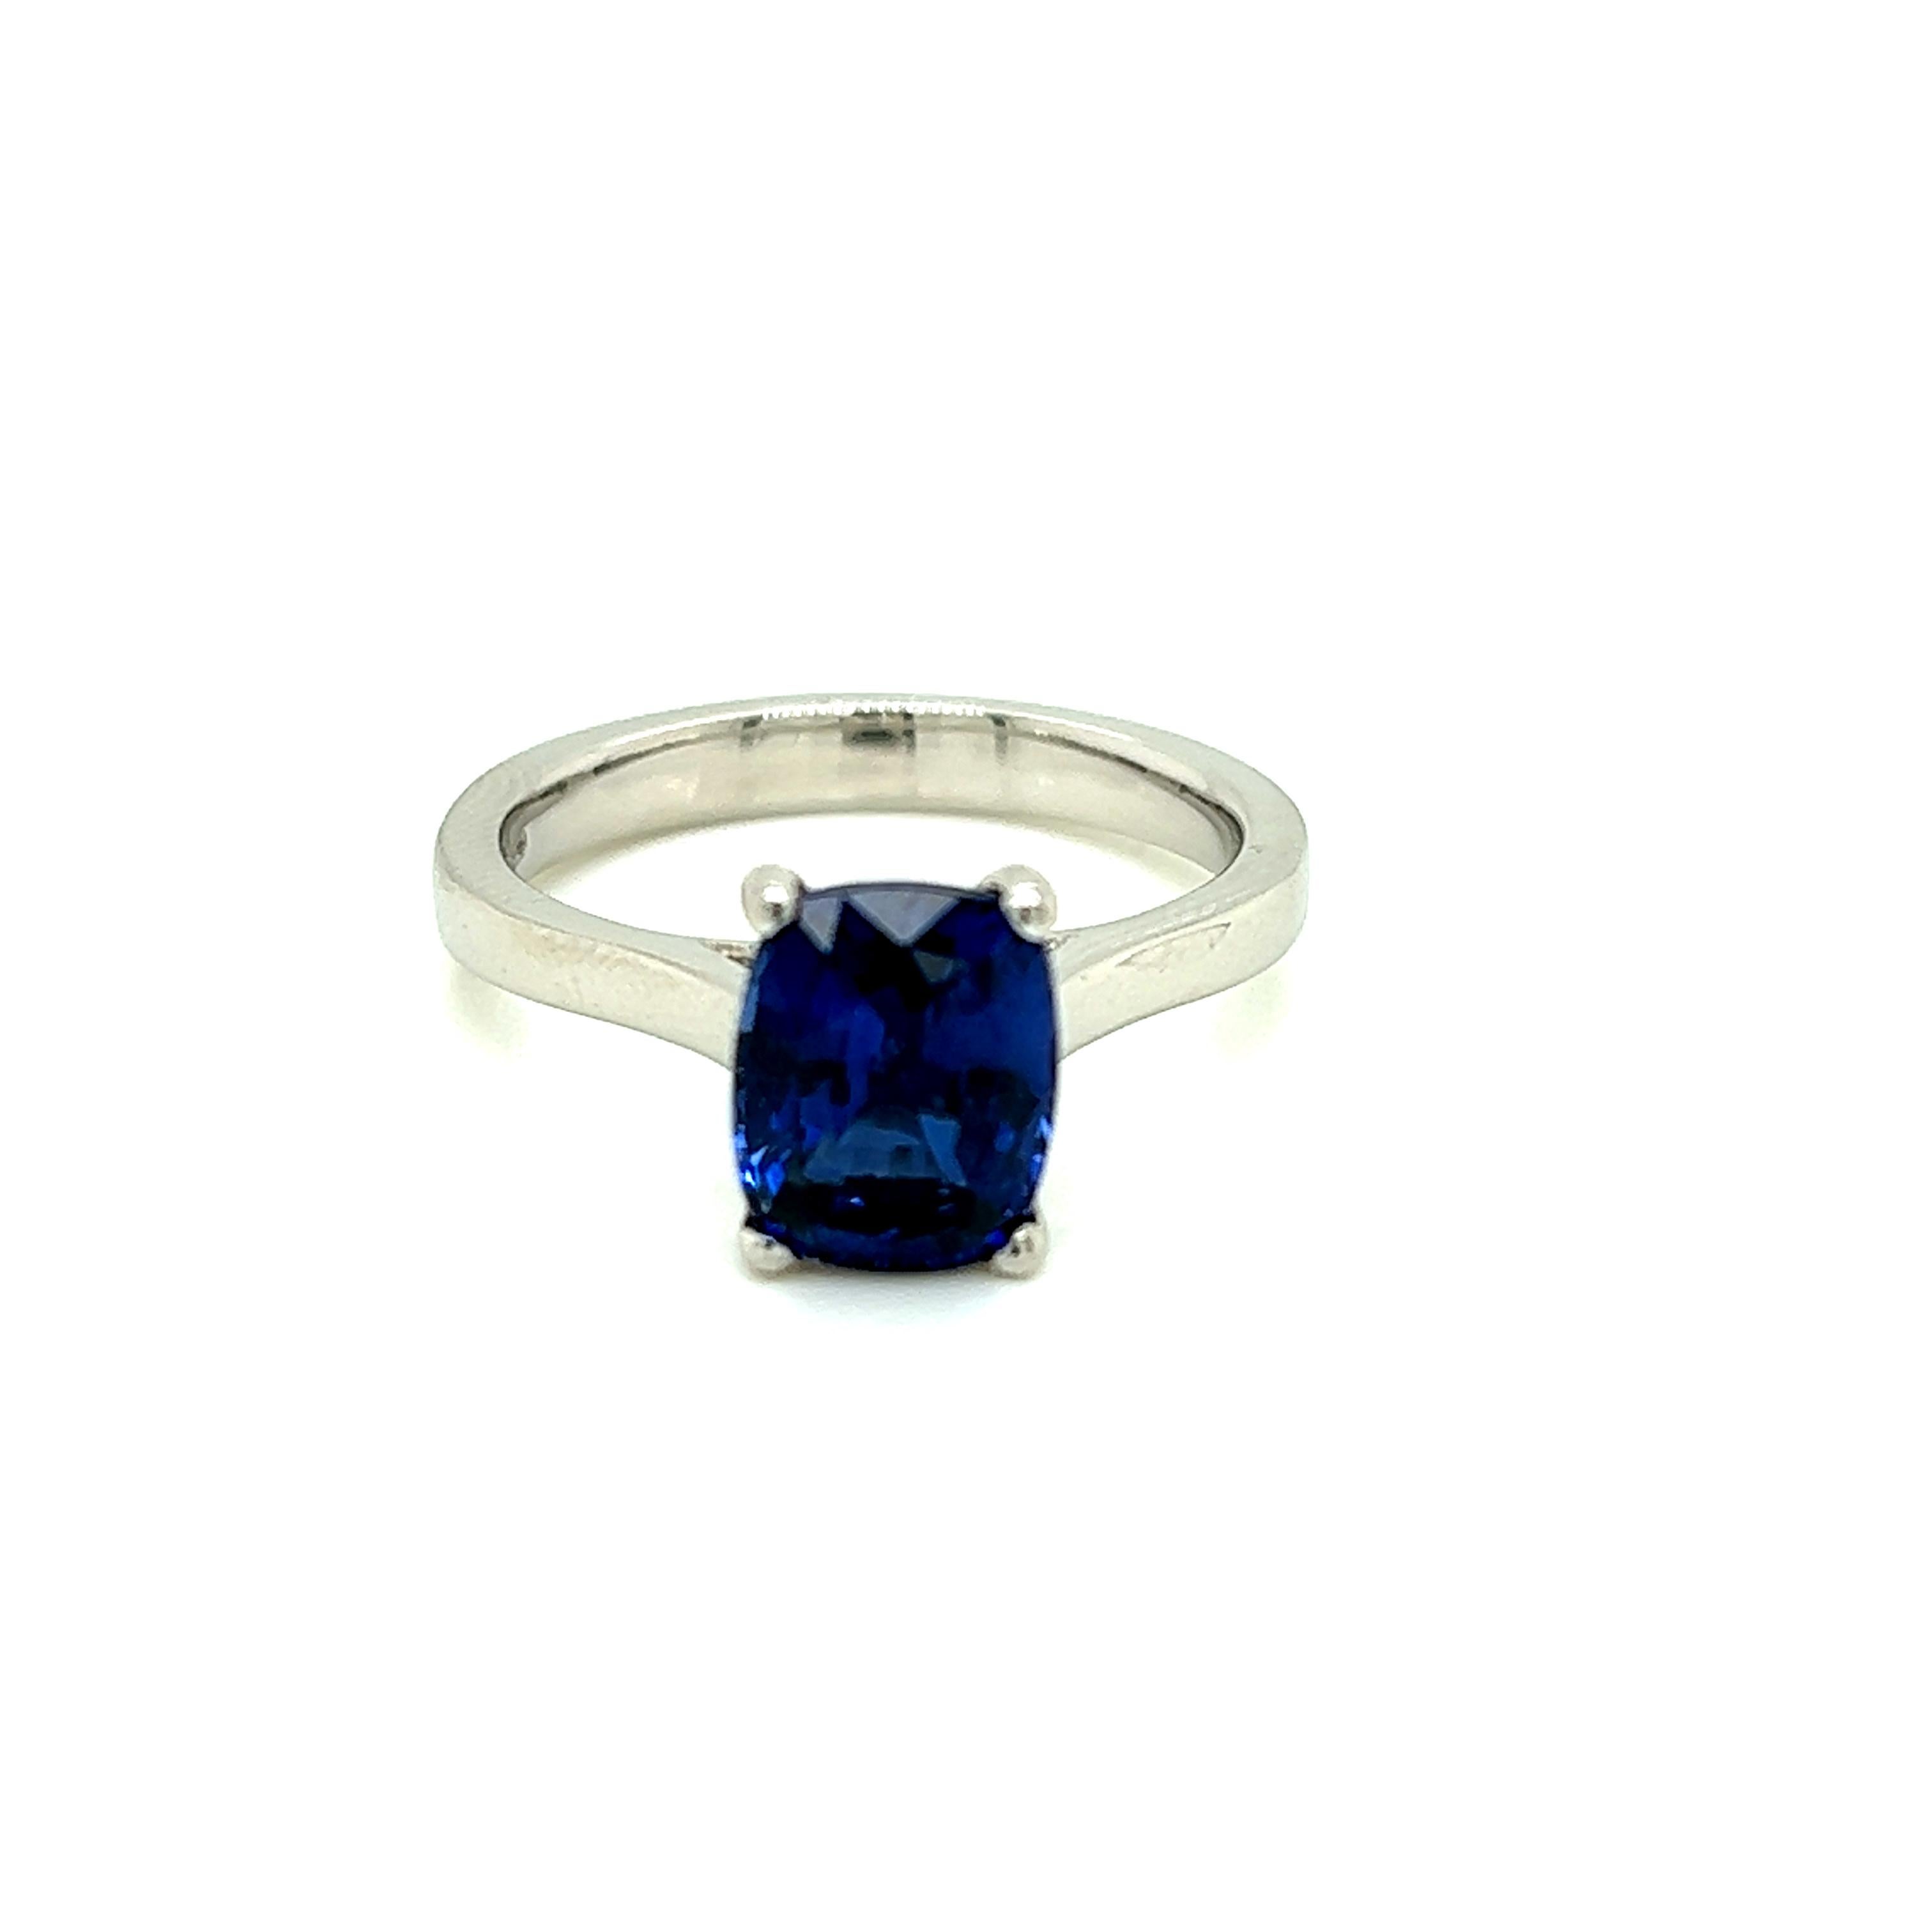 2.42 Carat Cushion cut Blue Sapphire Solitaire Platinum Ring

Cette bague solitaire classique est ornée d'un saphir bleu de 2.42 carat taillé en coussin. Les mots manquent pour décrire le joyau resplendissant de cette bague en platine, serti dans